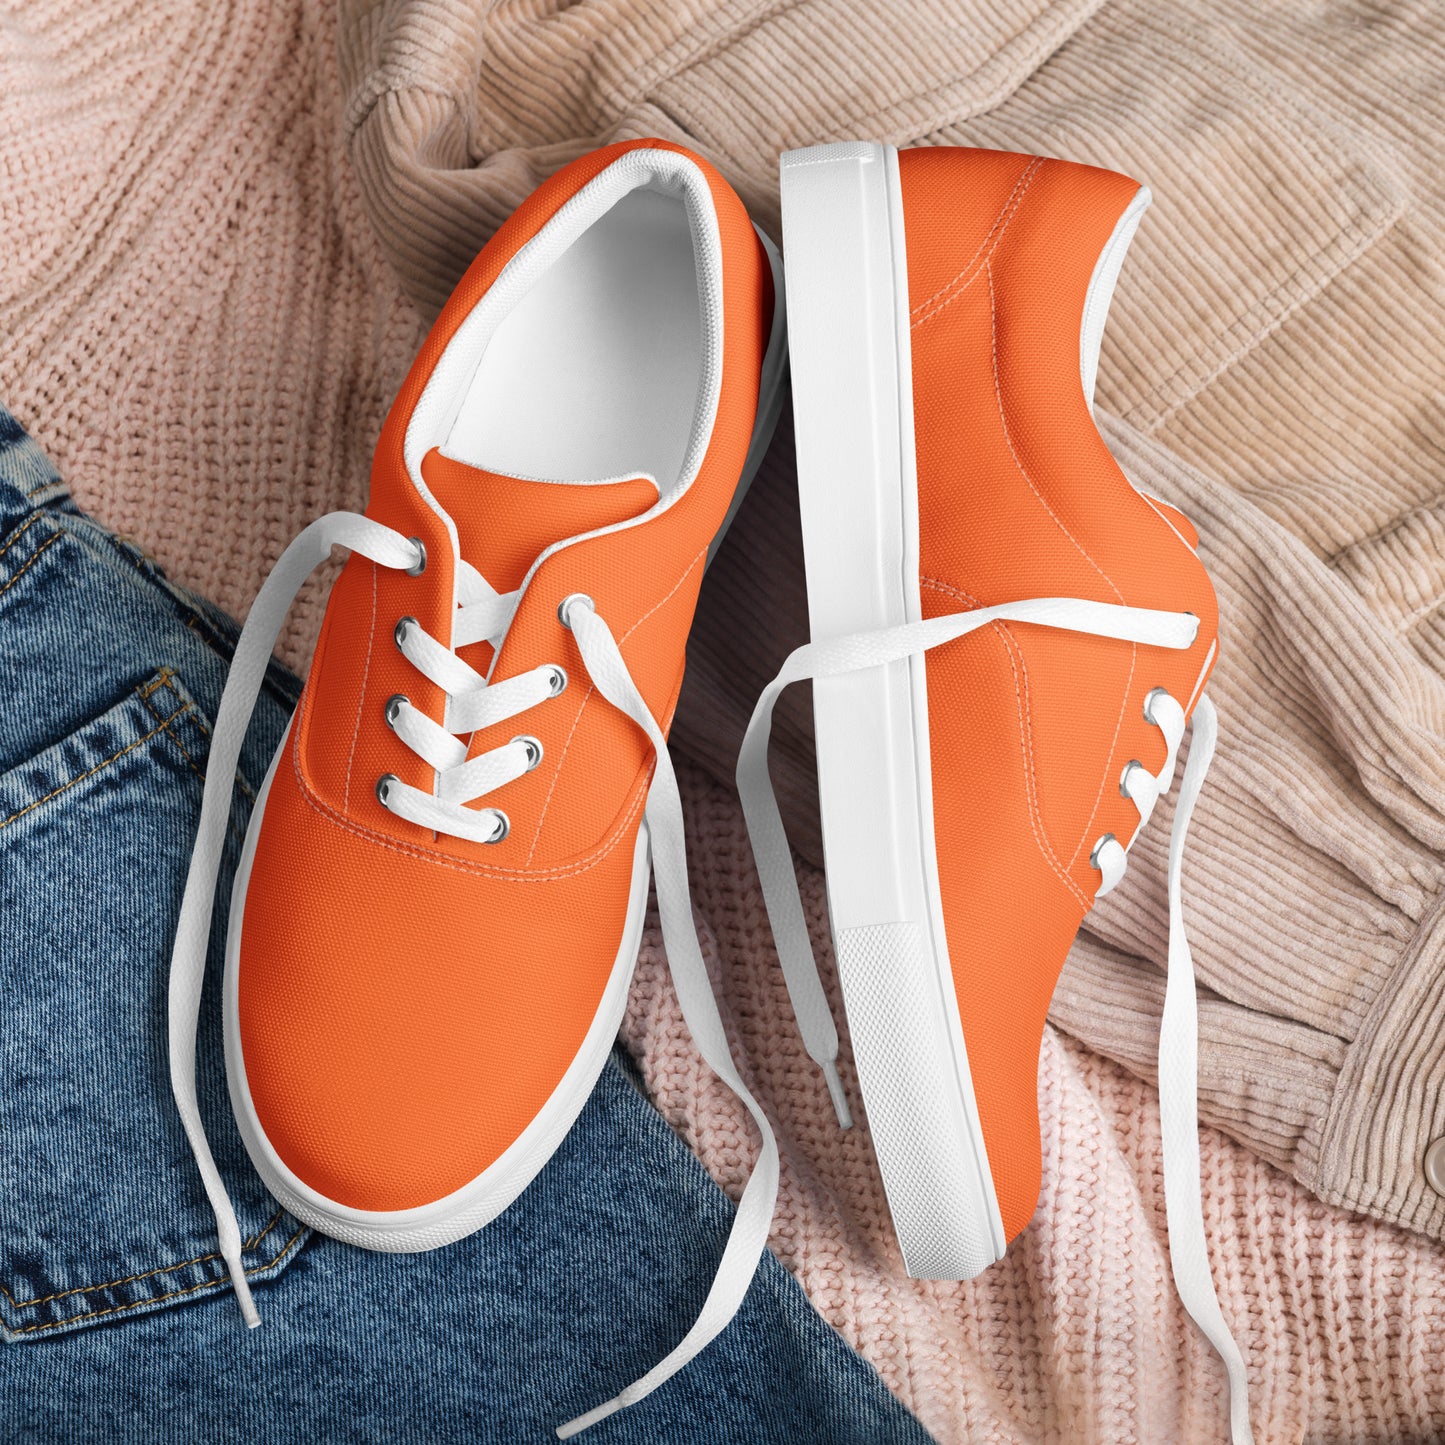 o21 Orange Women’s lace-up canvas shoes